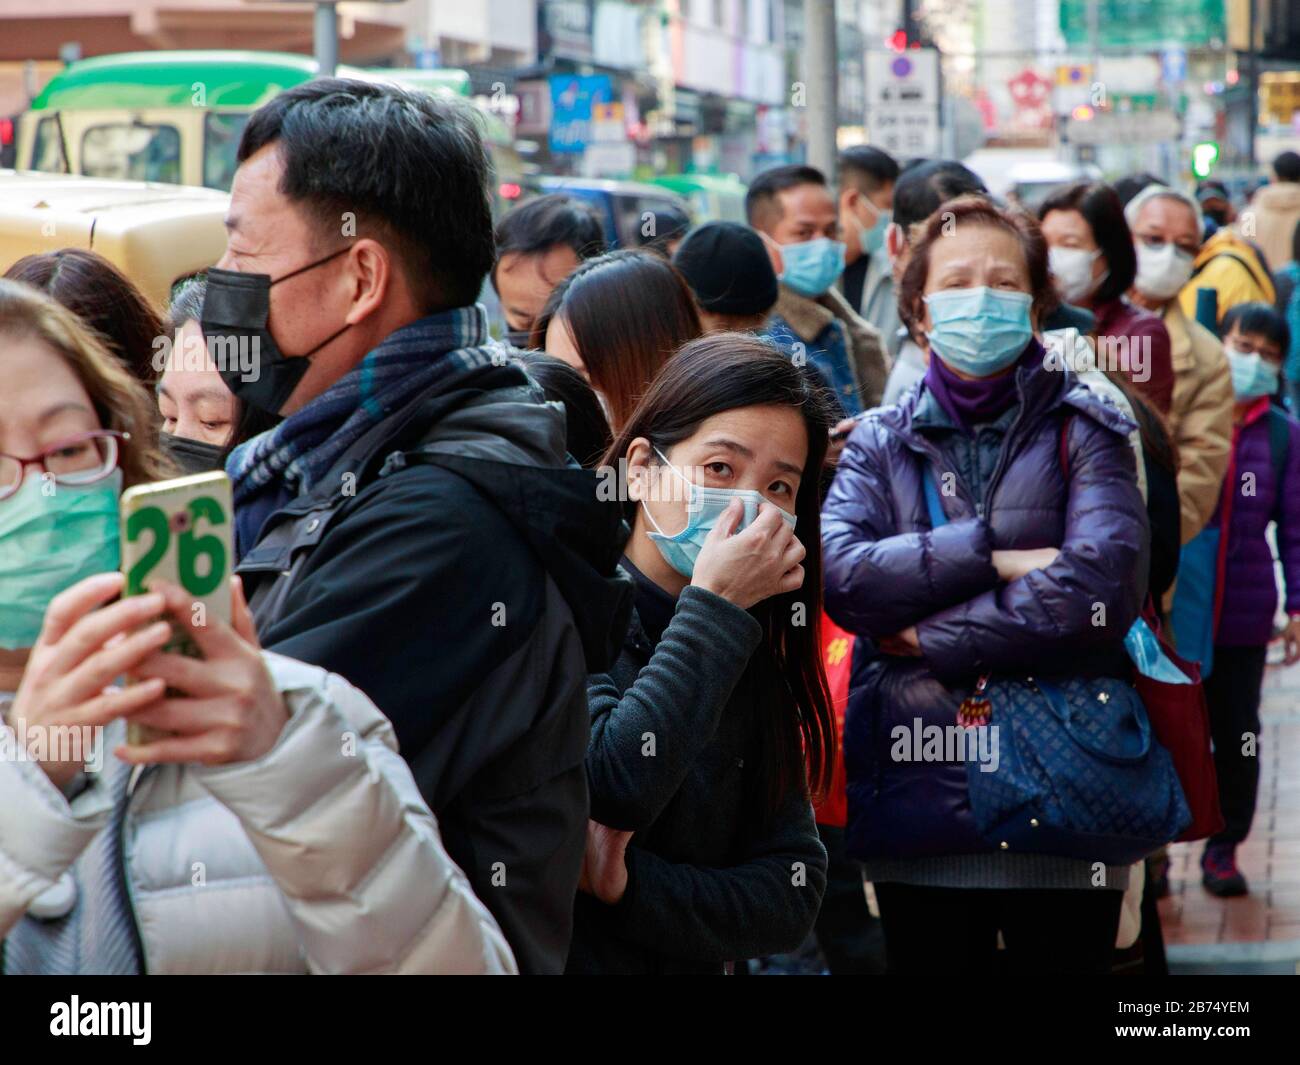 Les gens se alignent pour obtenir gratuitement des masques chirurgicaux d'une pharmacie à Hong Kong. Chaque personne peut obtenir 3 masques. Banque D'Images